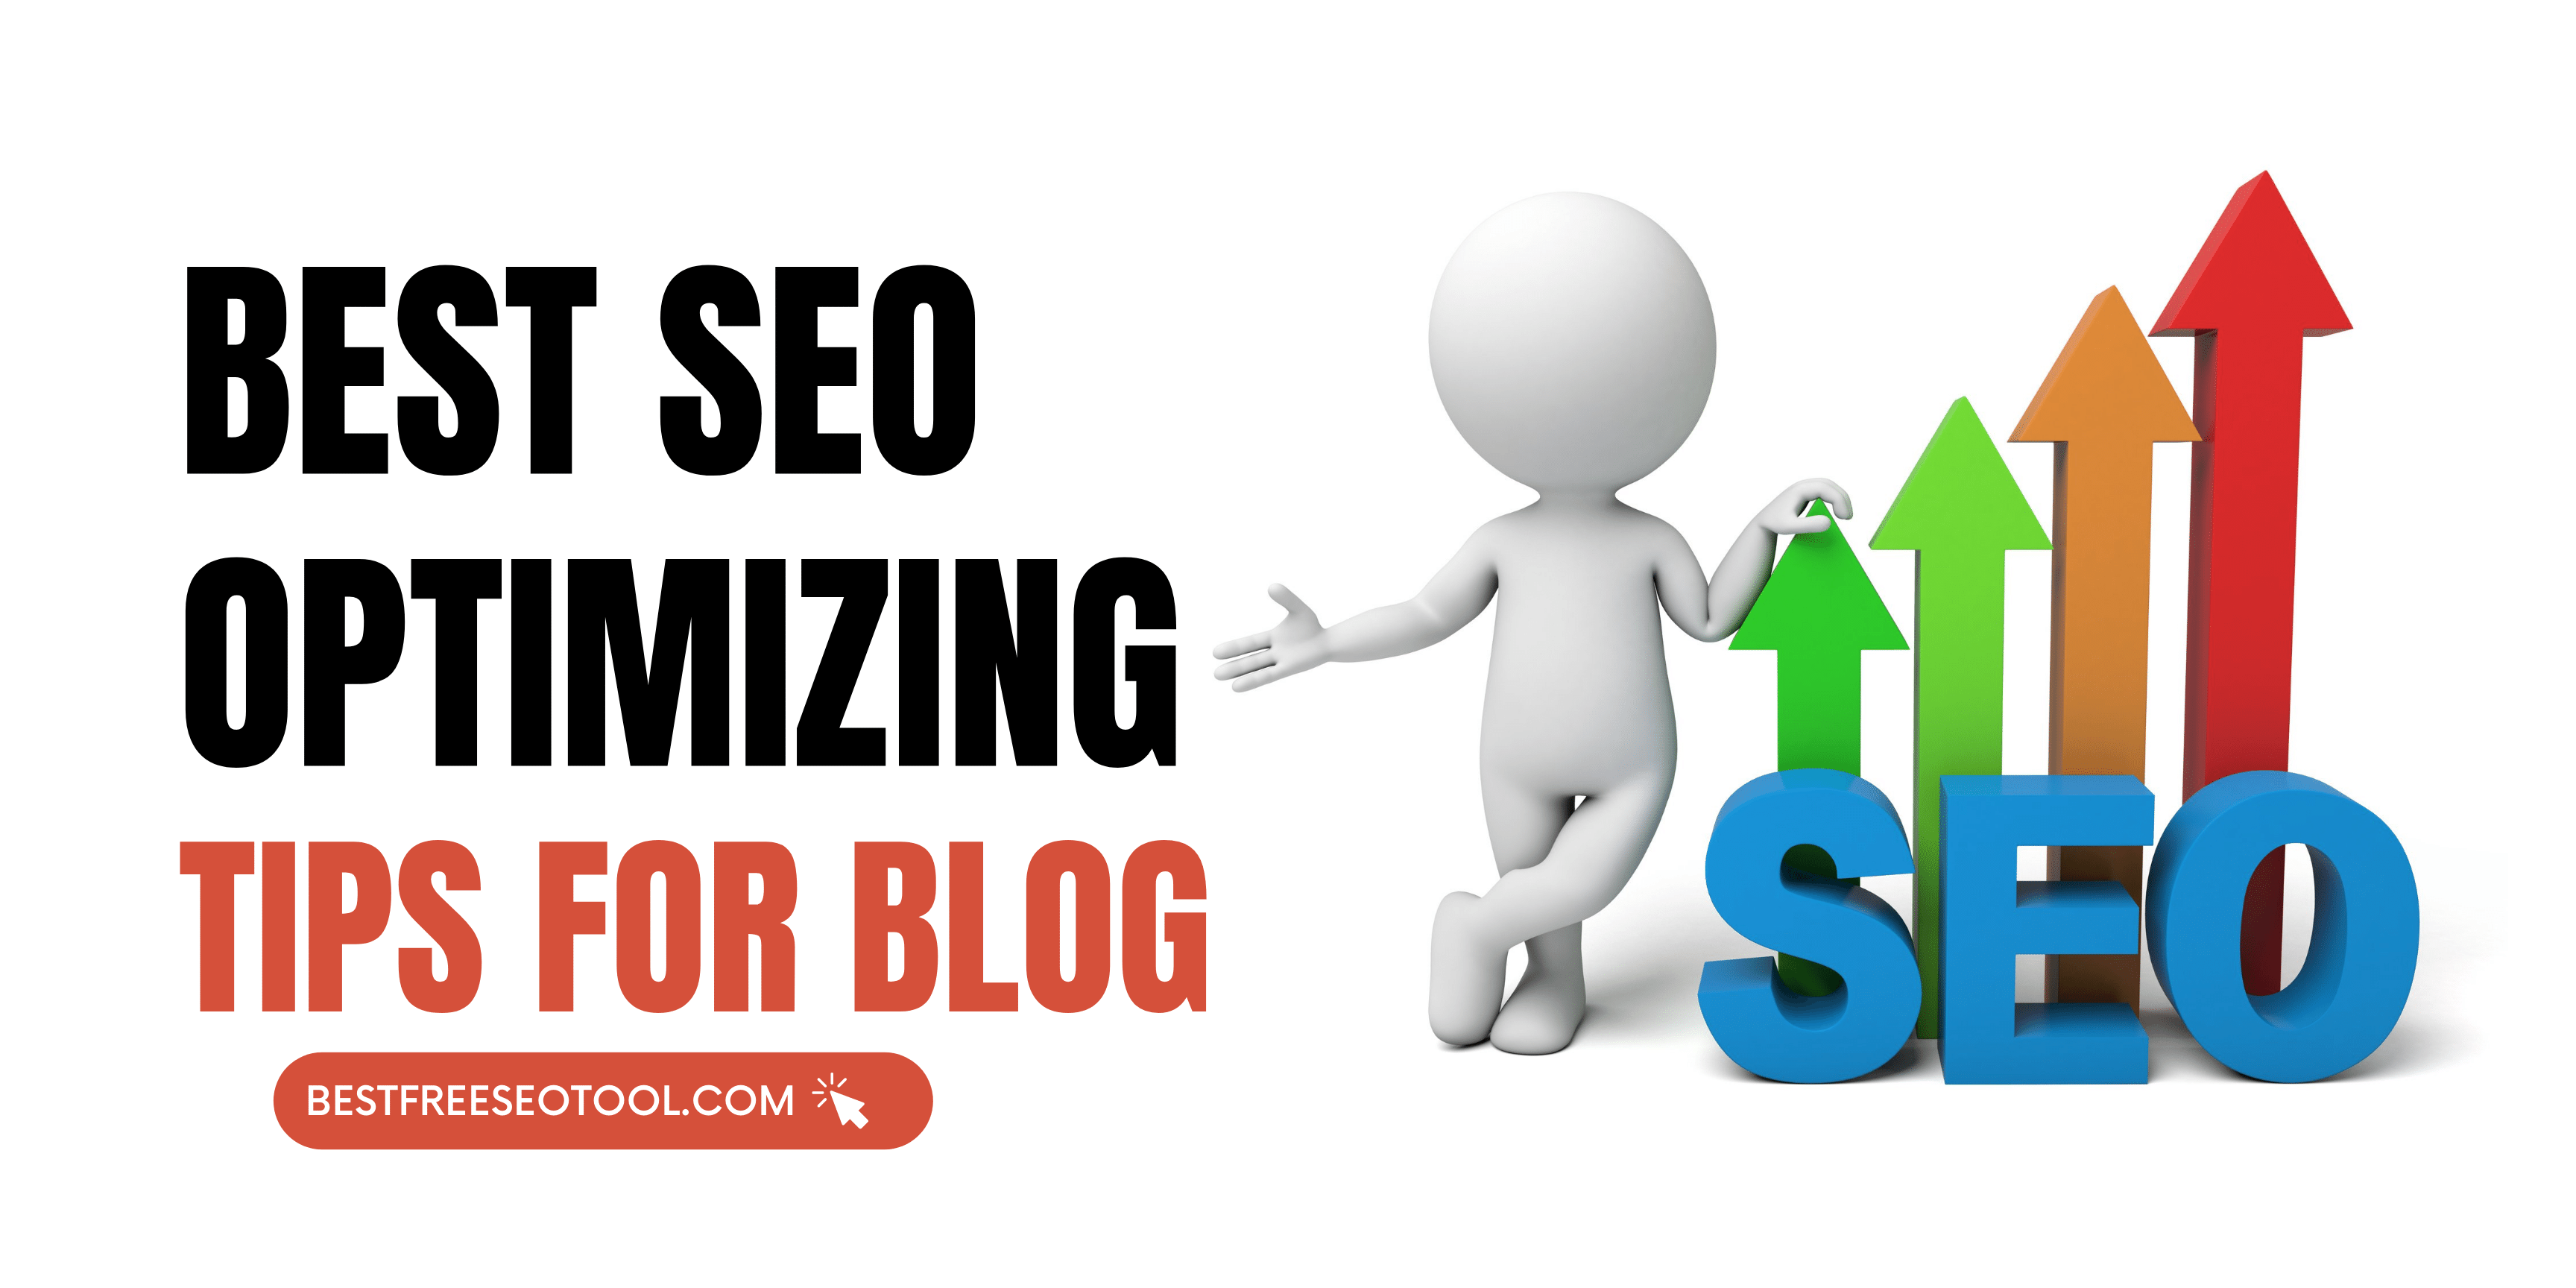 Best SEO Optimizing Tips for Blog